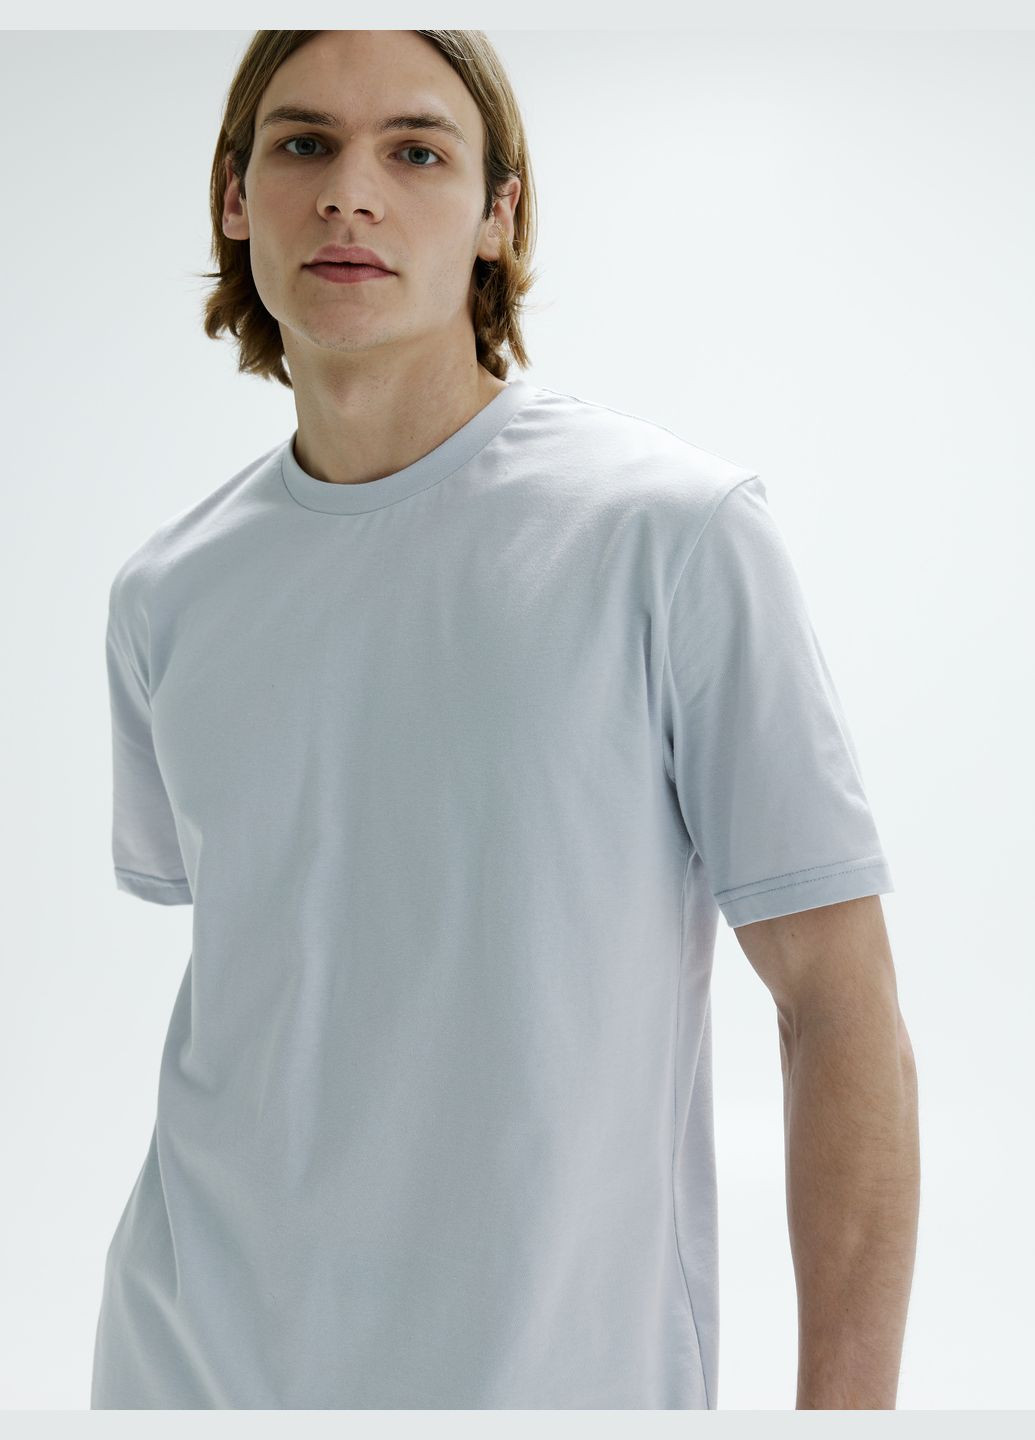 Светло-серая футболка мужская с коротким рукавом Роза